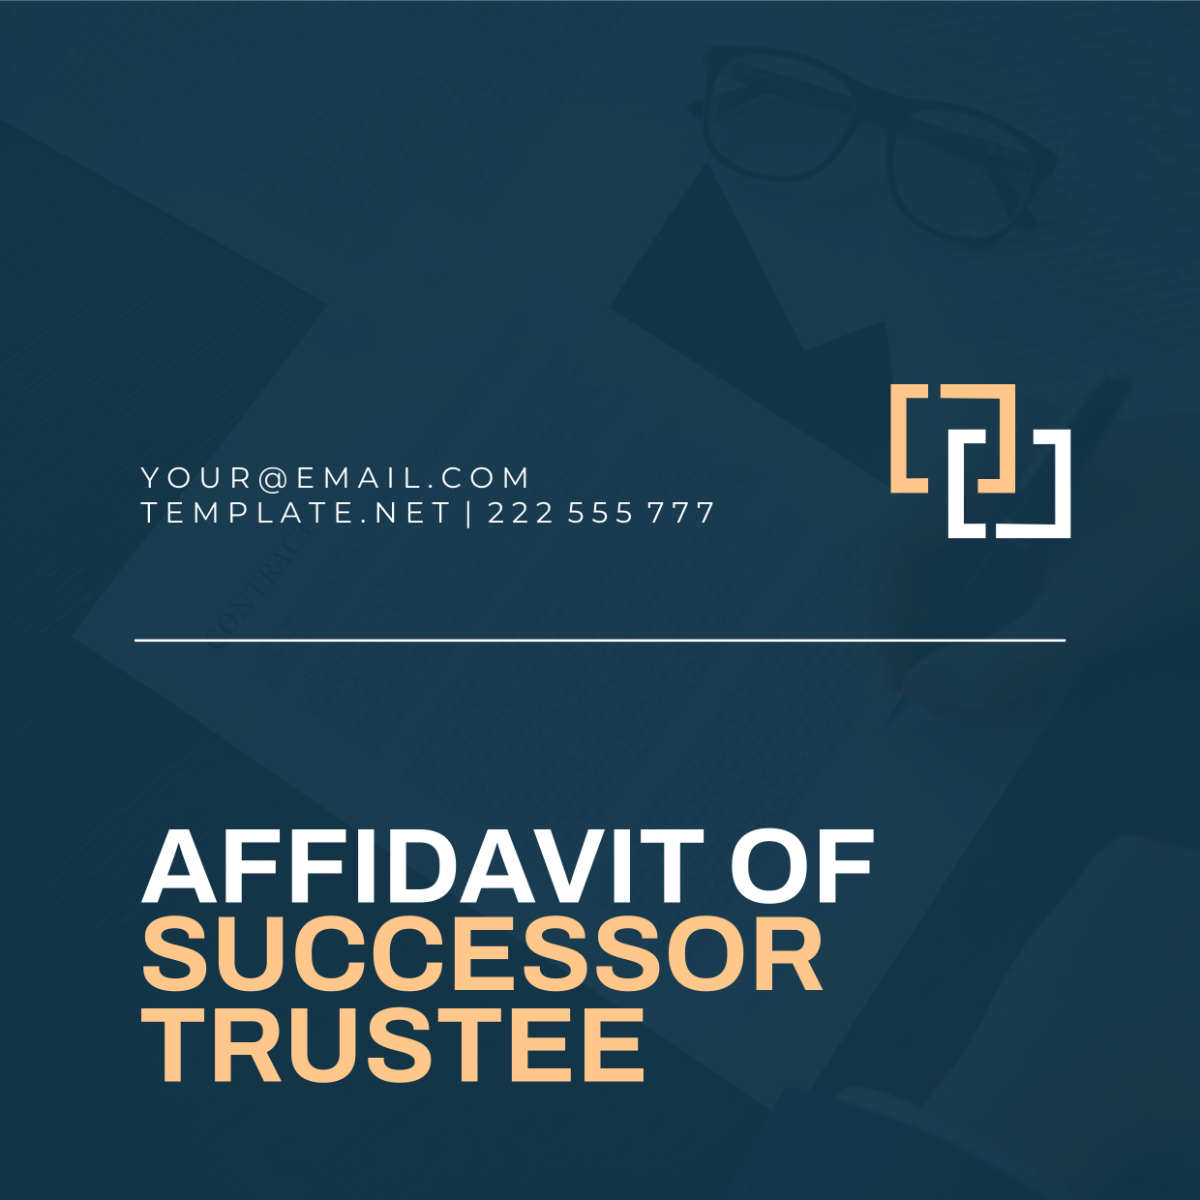 Affidavit of Successor Trustee Template